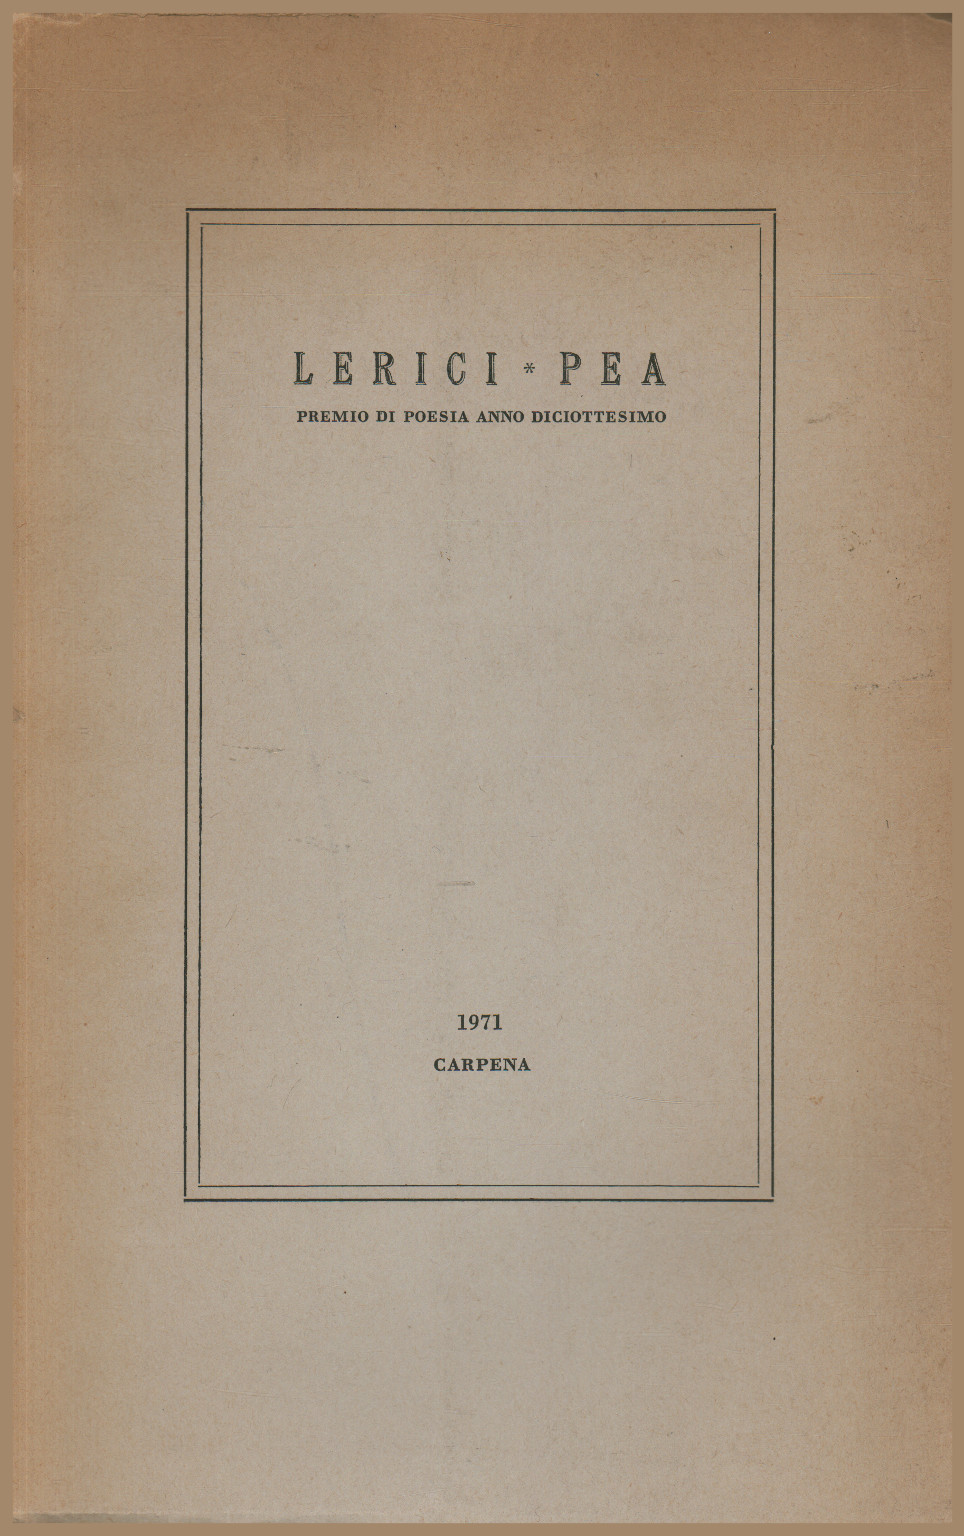 Lerici - Pea. Premio di poesia anno diciottesimo, AA.VV.